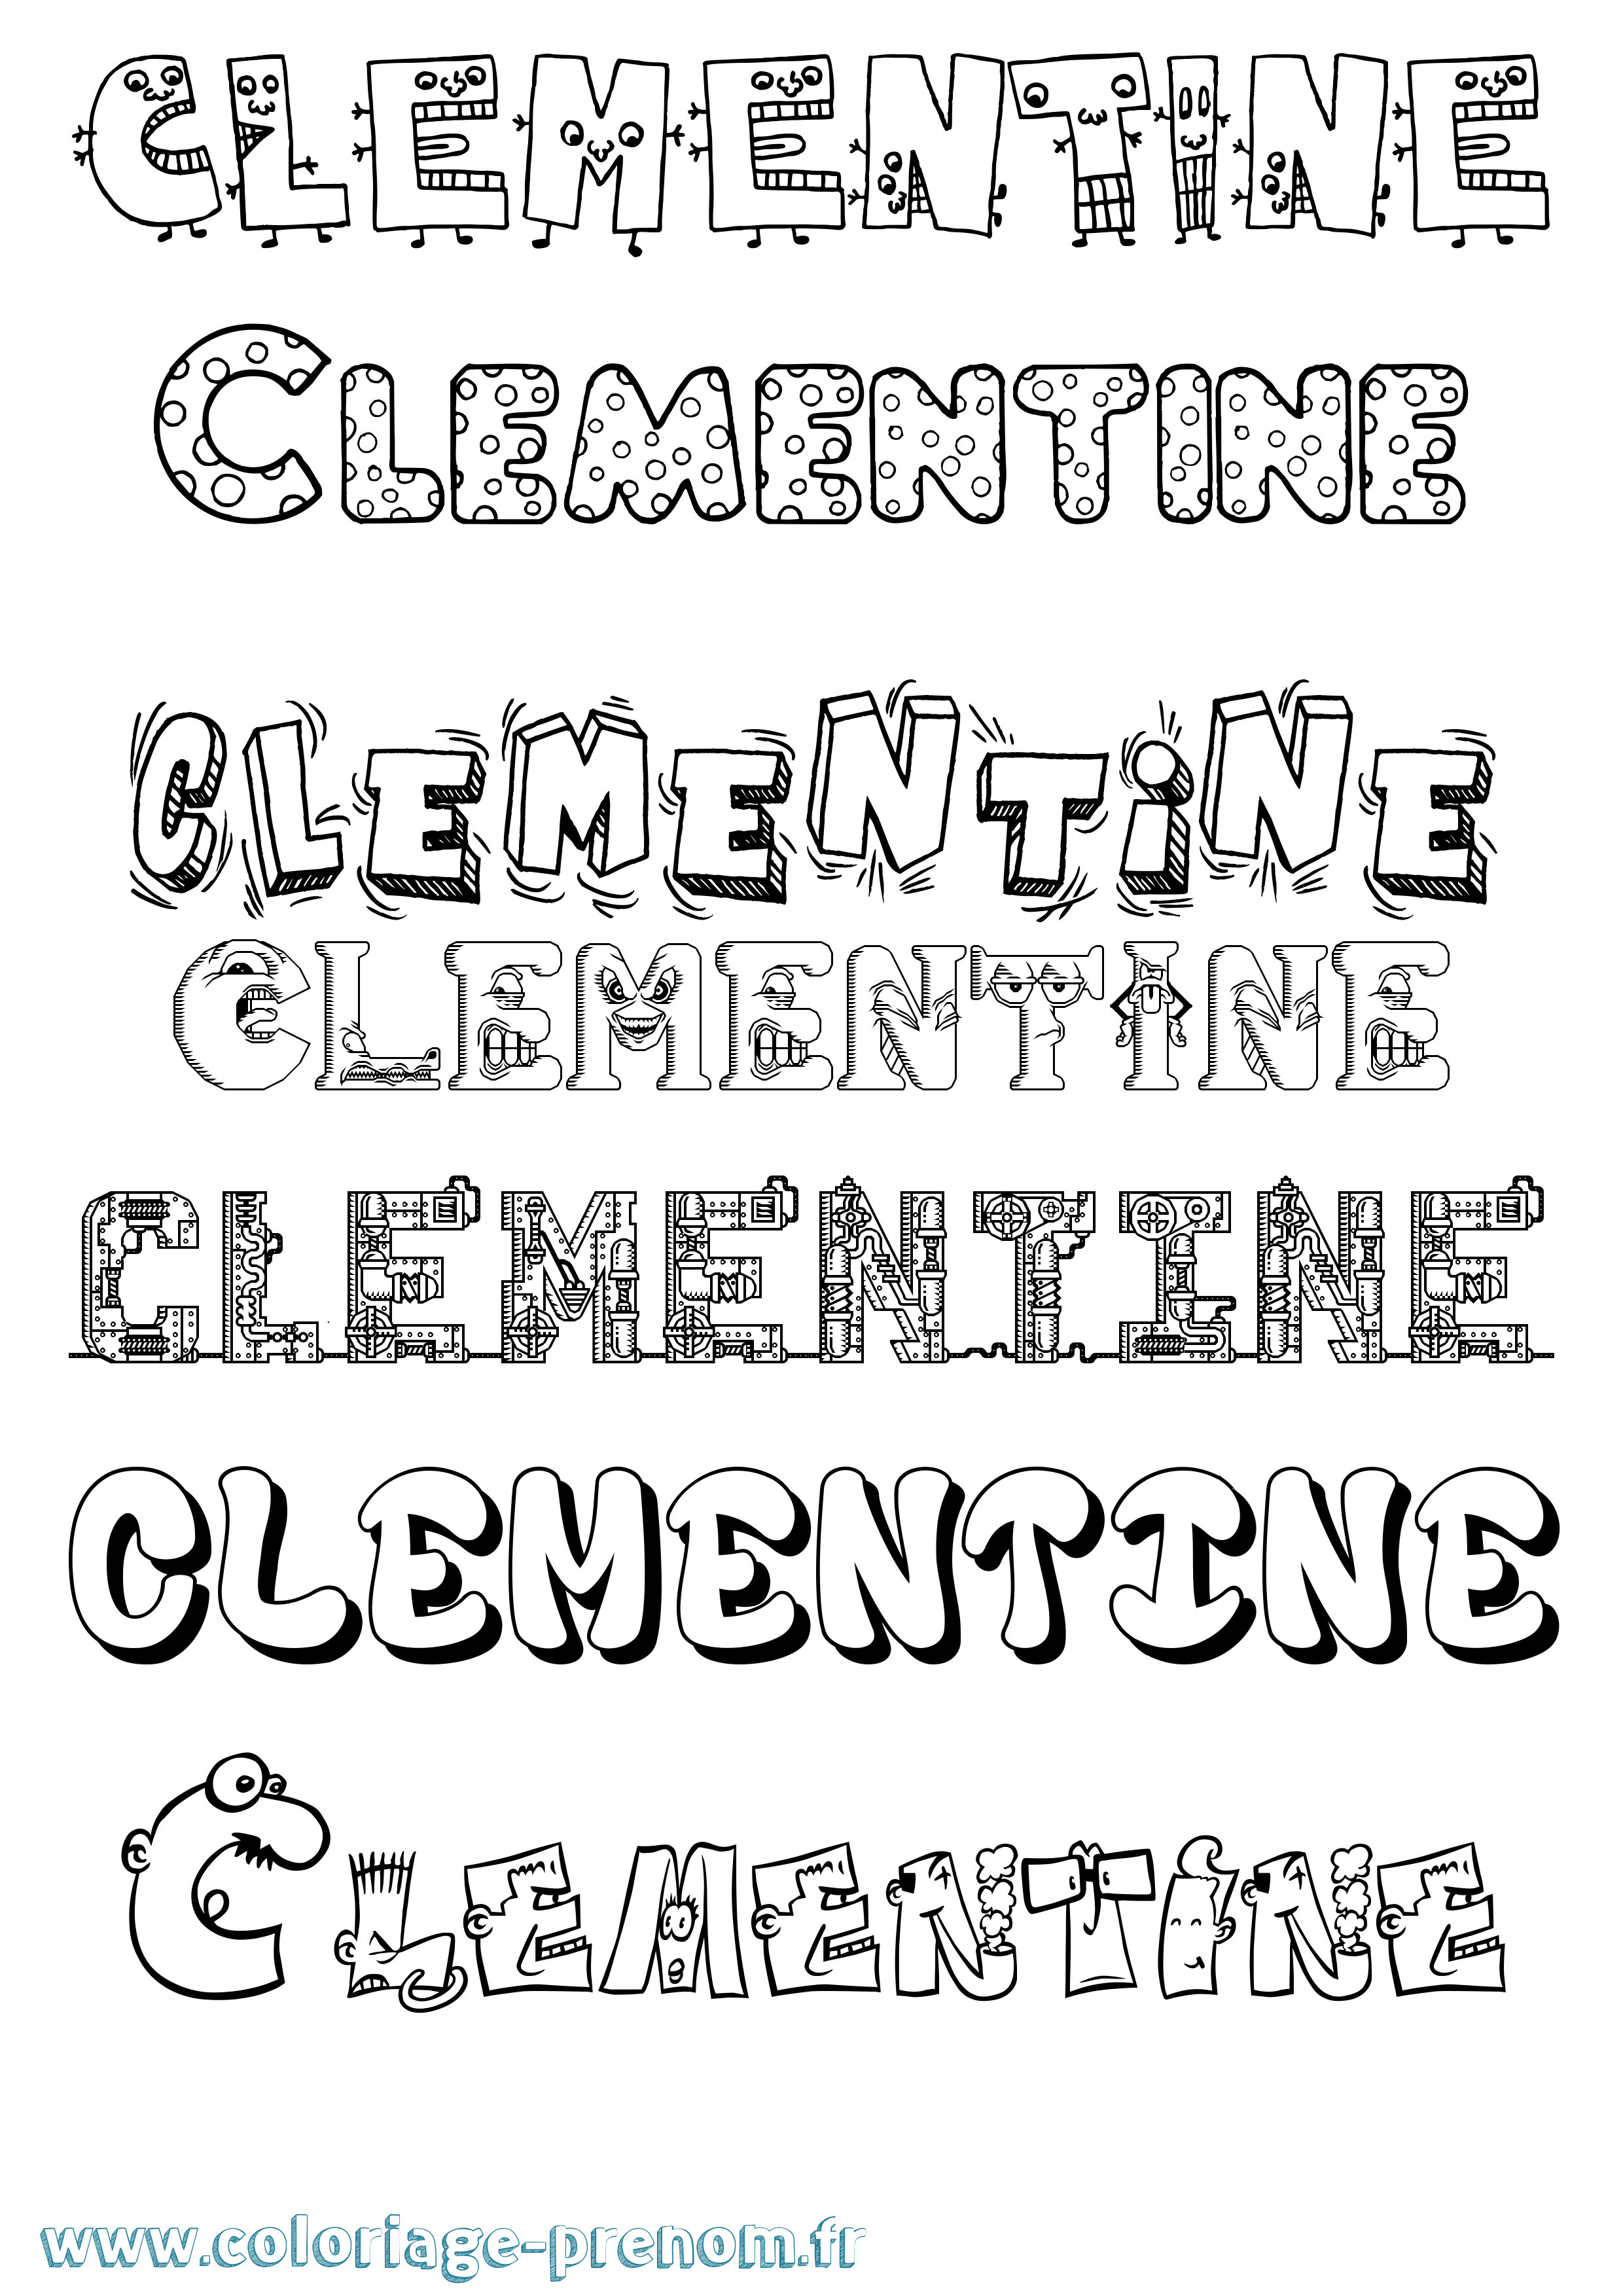 Coloriage prénom Clementine